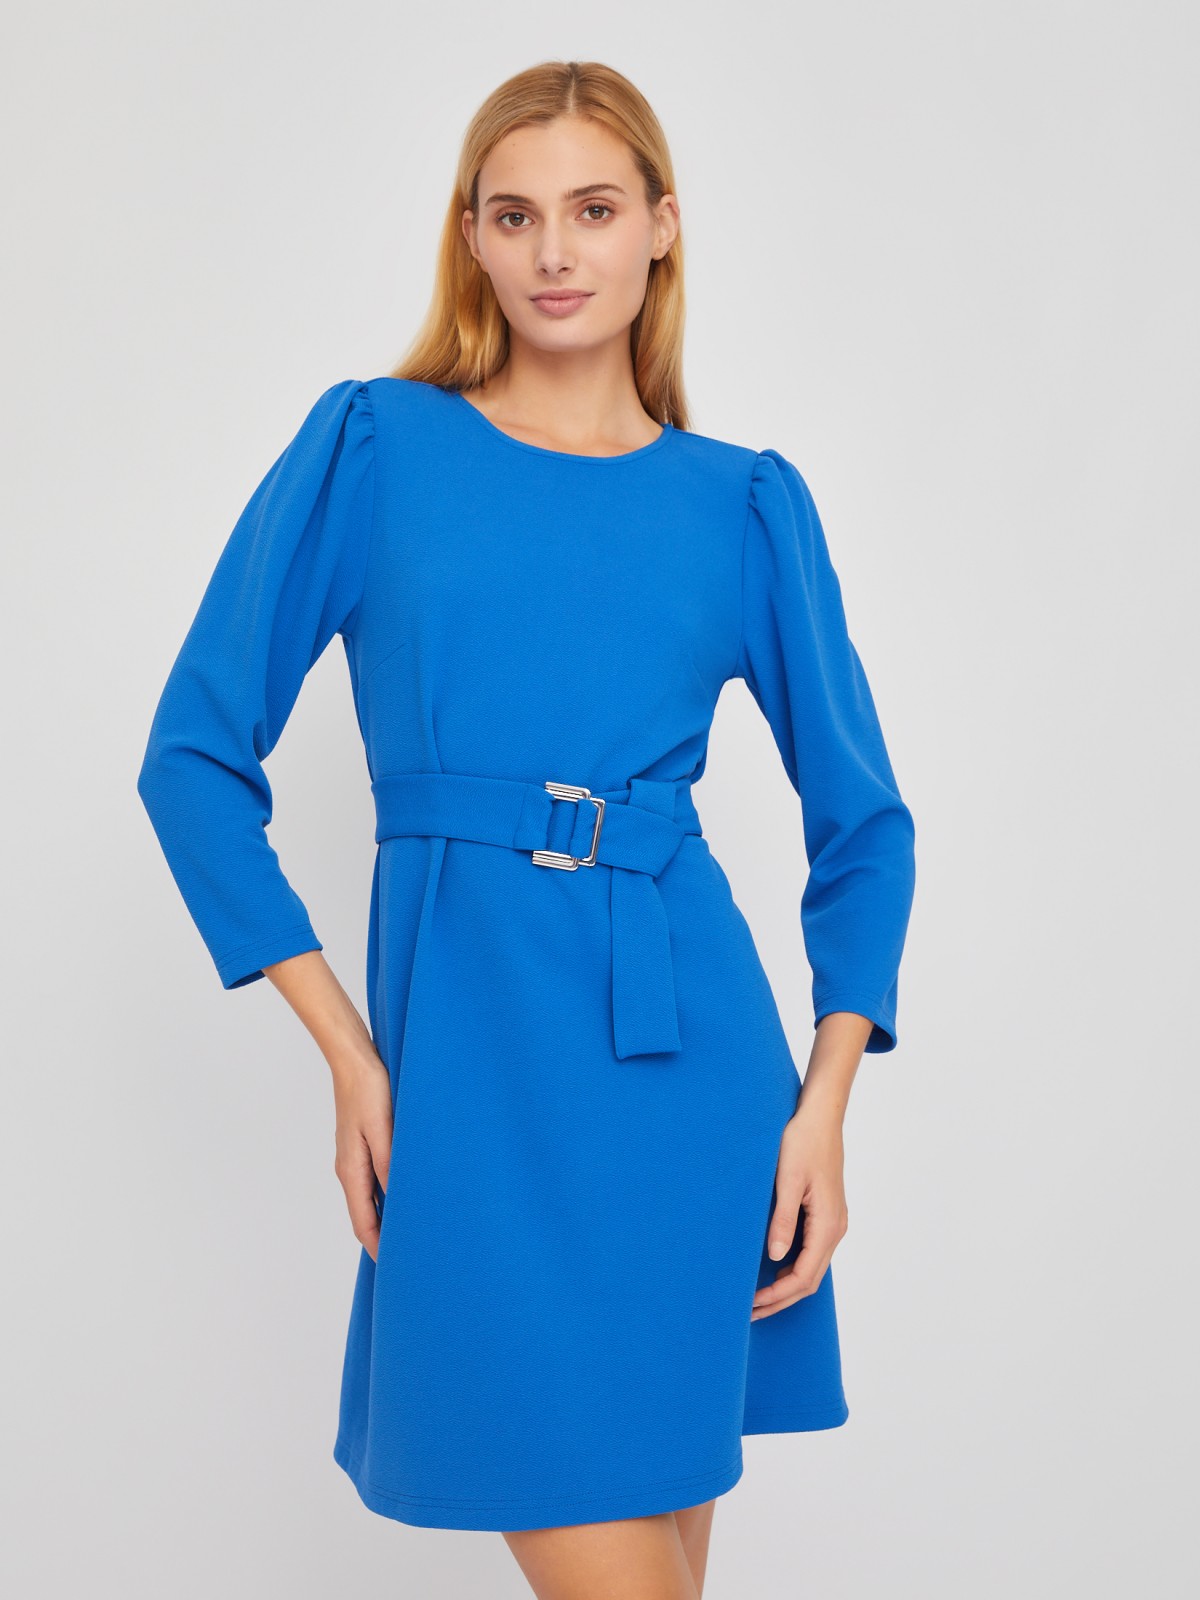 Платье длины мини с акцентном на талии и поясом zolla 024118159242, цвет голубой, размер XS